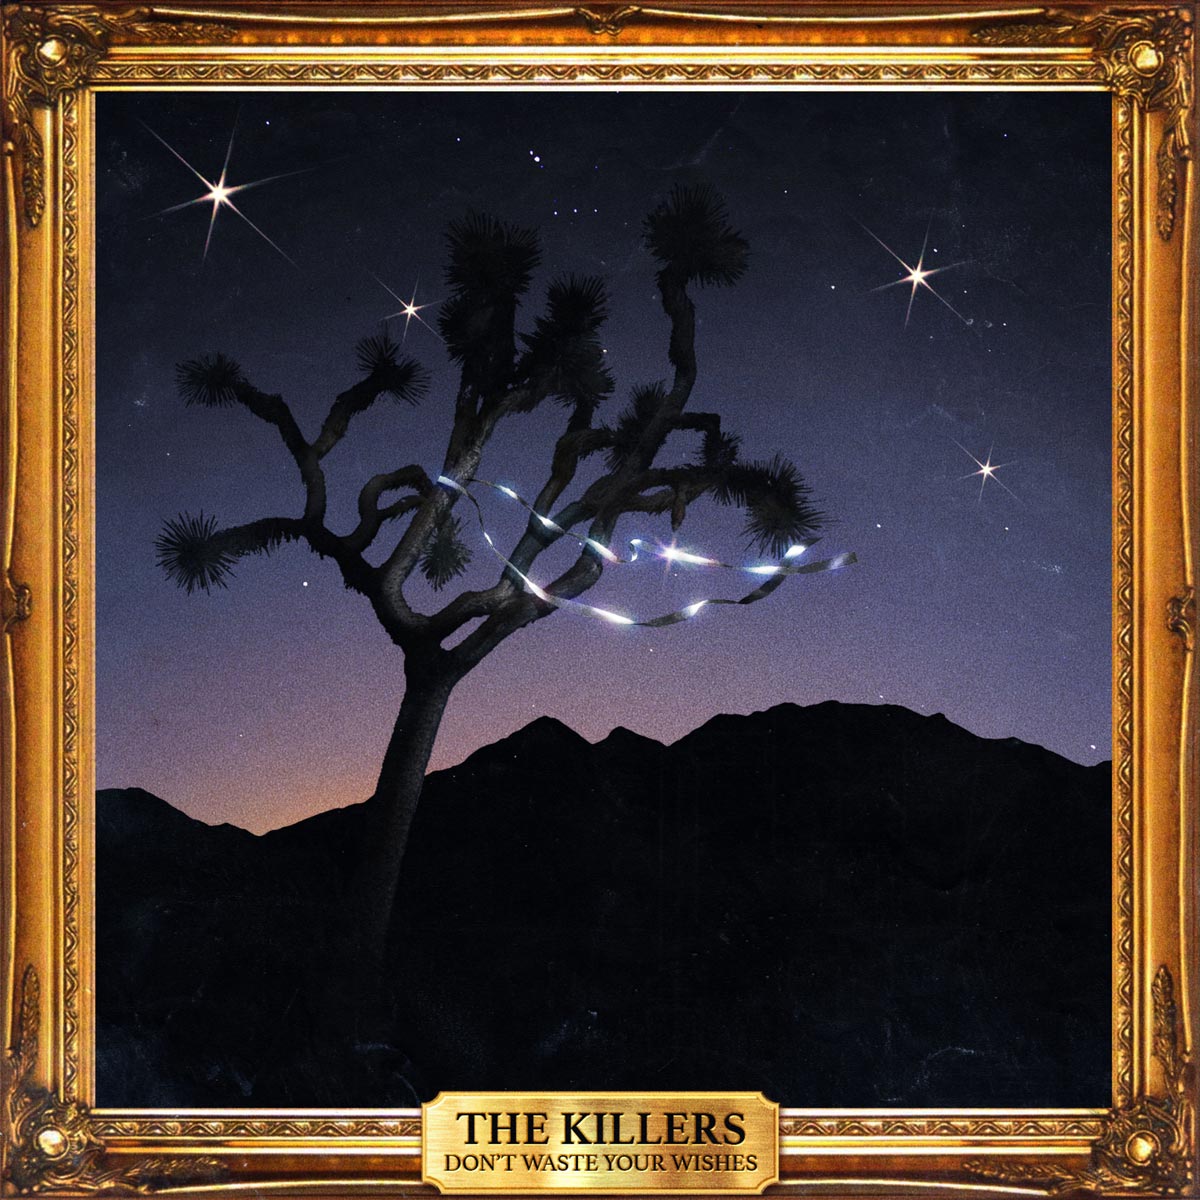 The Killers: Don't waste your wishes, la portada del disco